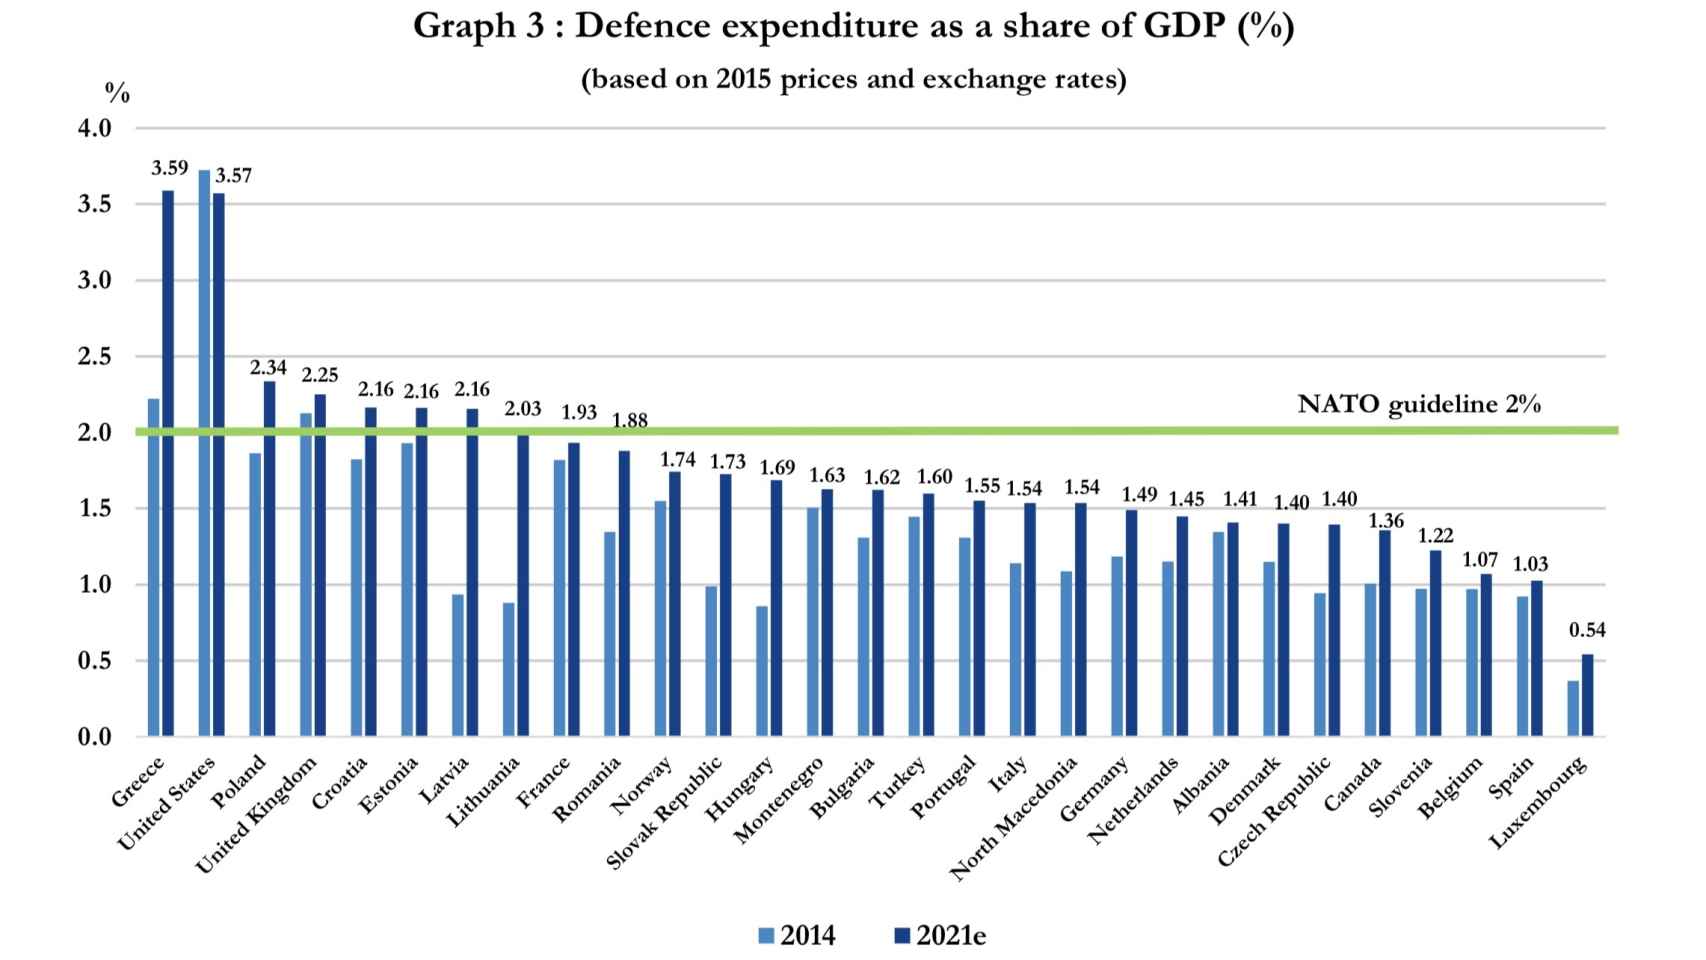 Gasto en defensa en los países de la OTAN (en % del PIB)